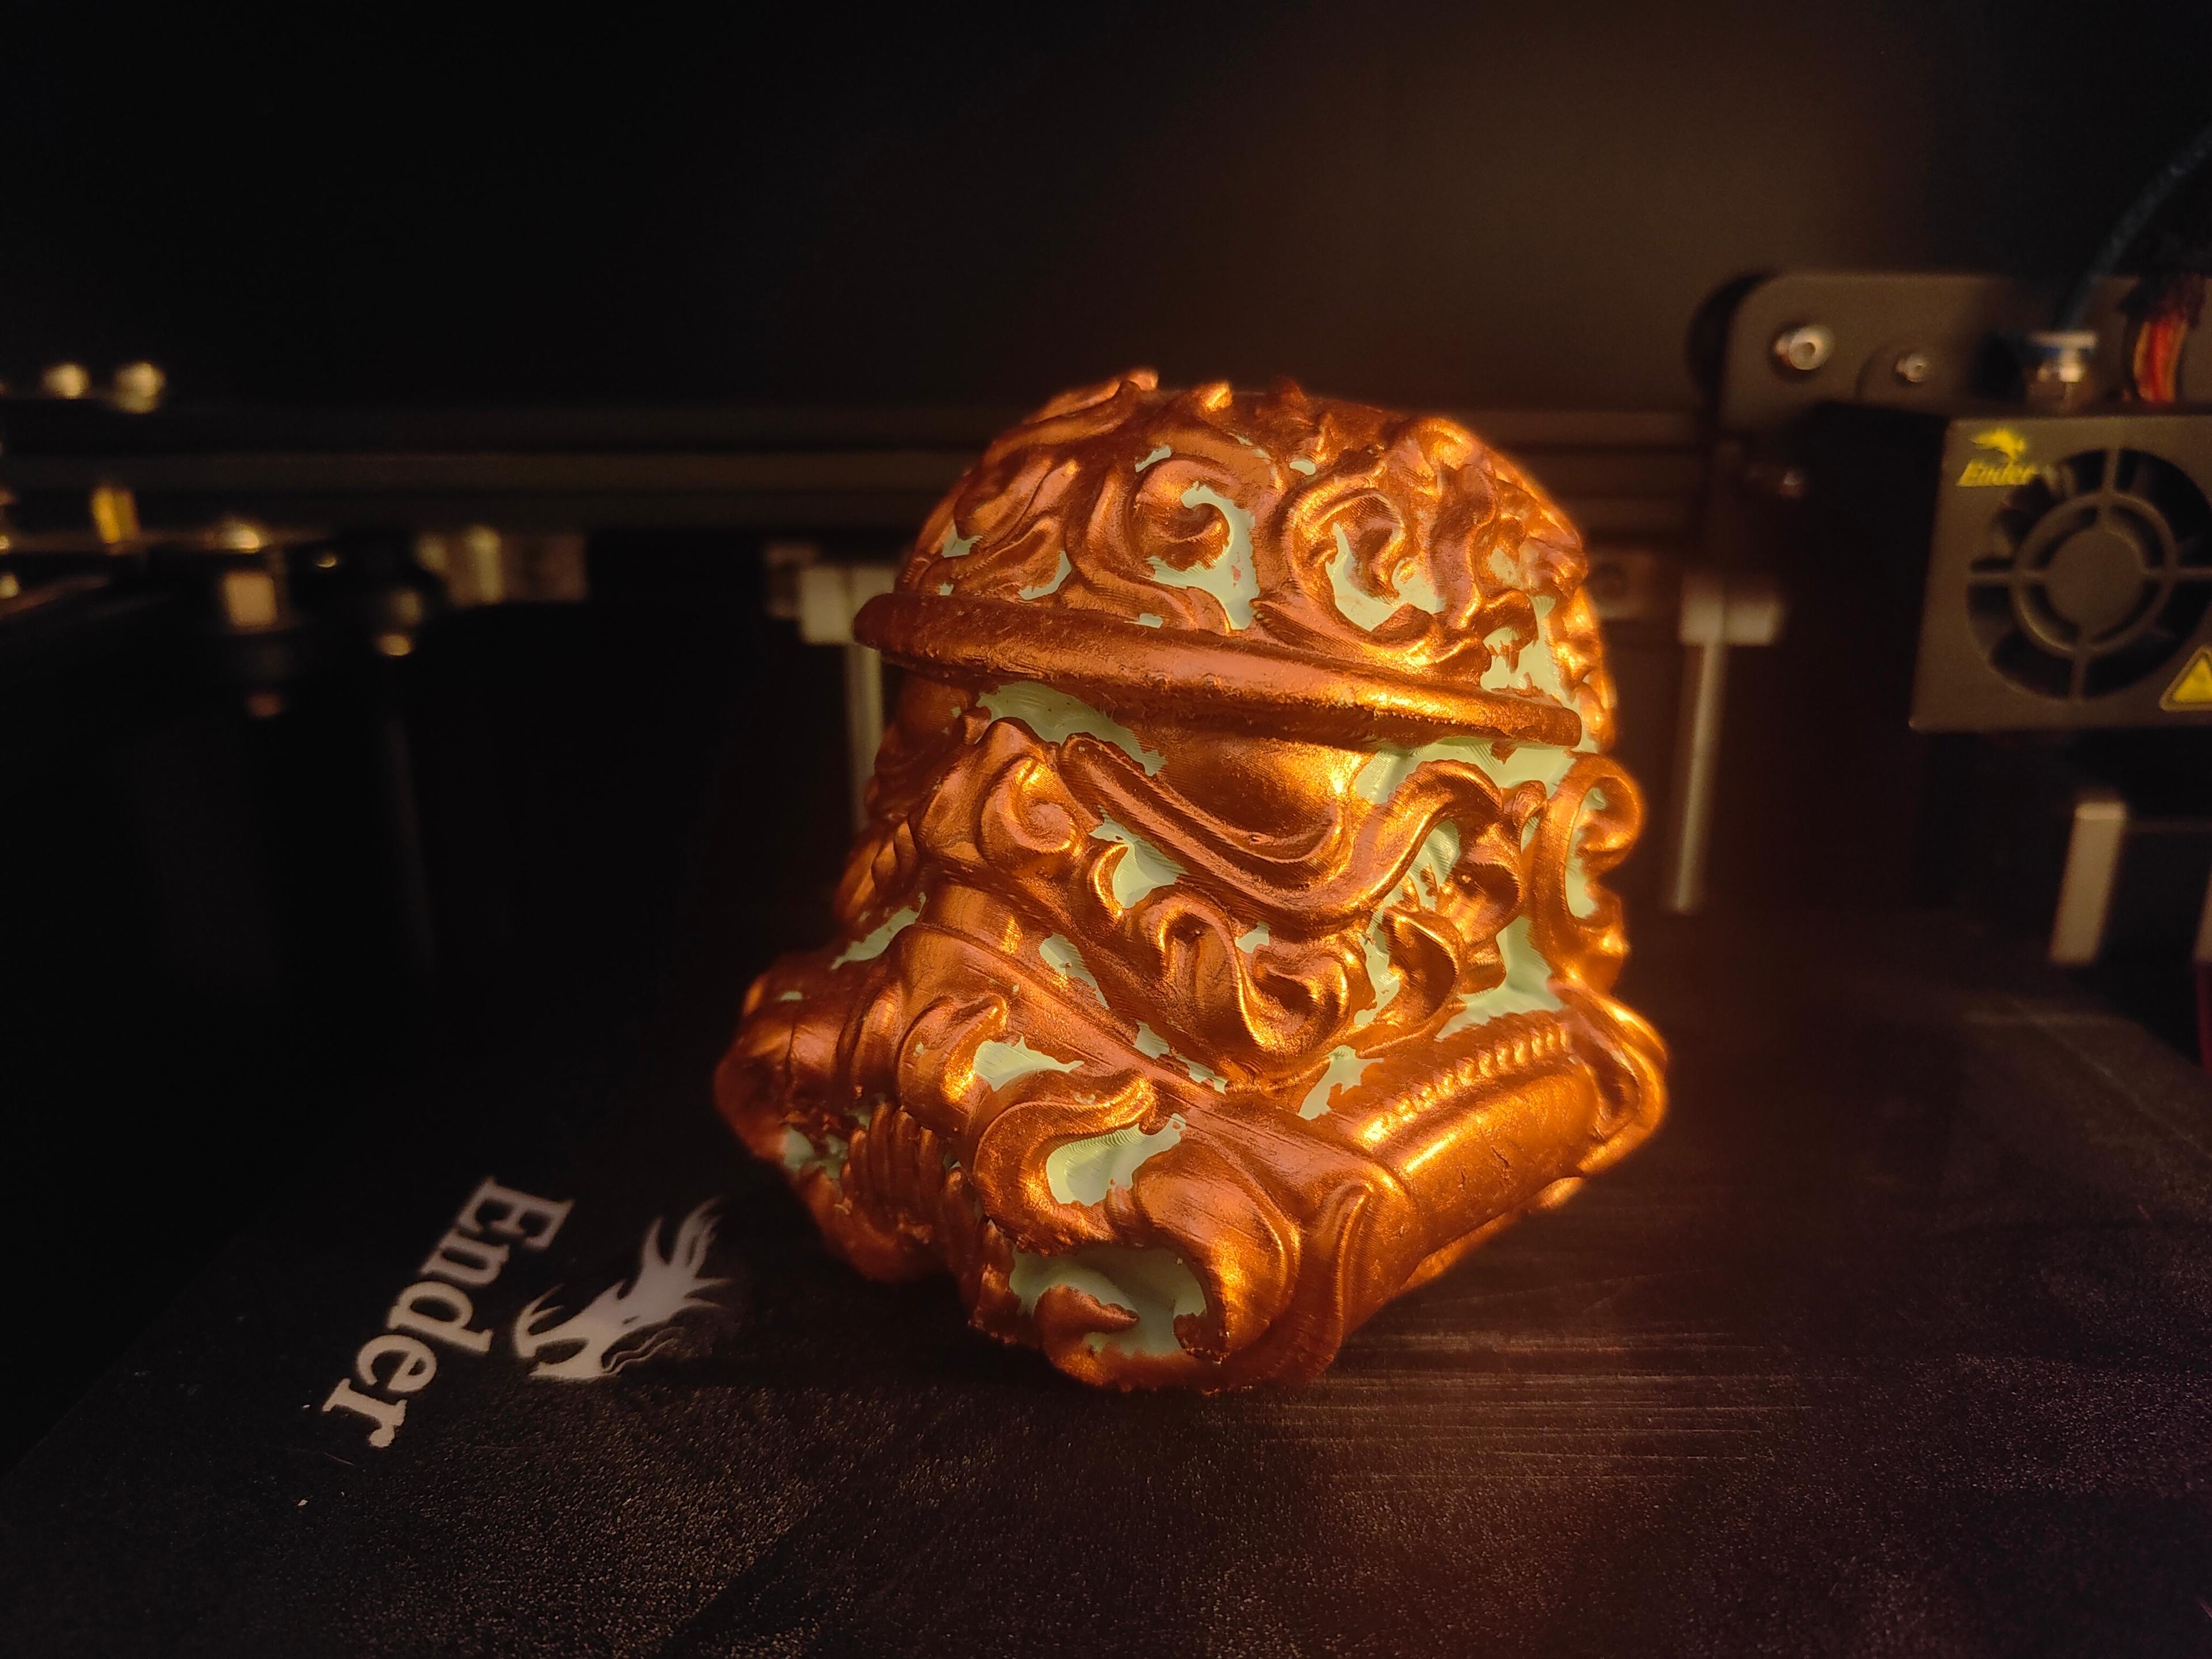 Stromtrooper Ornate Scroll work - Star Wars - Fanart model 3d model